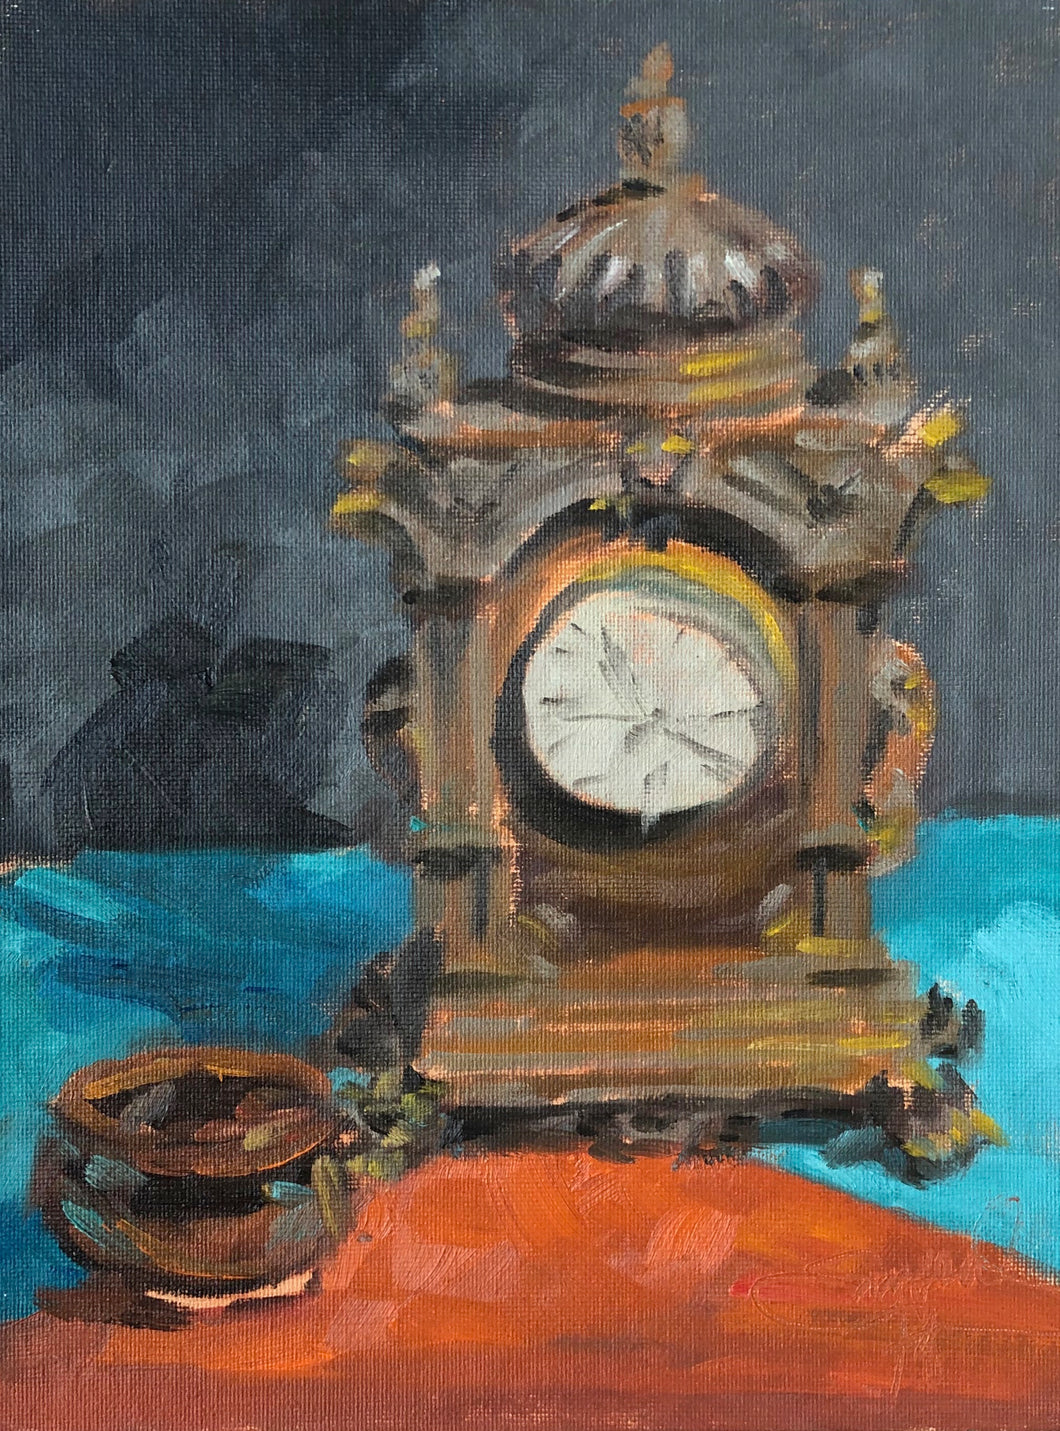 Ornate Clock, 9